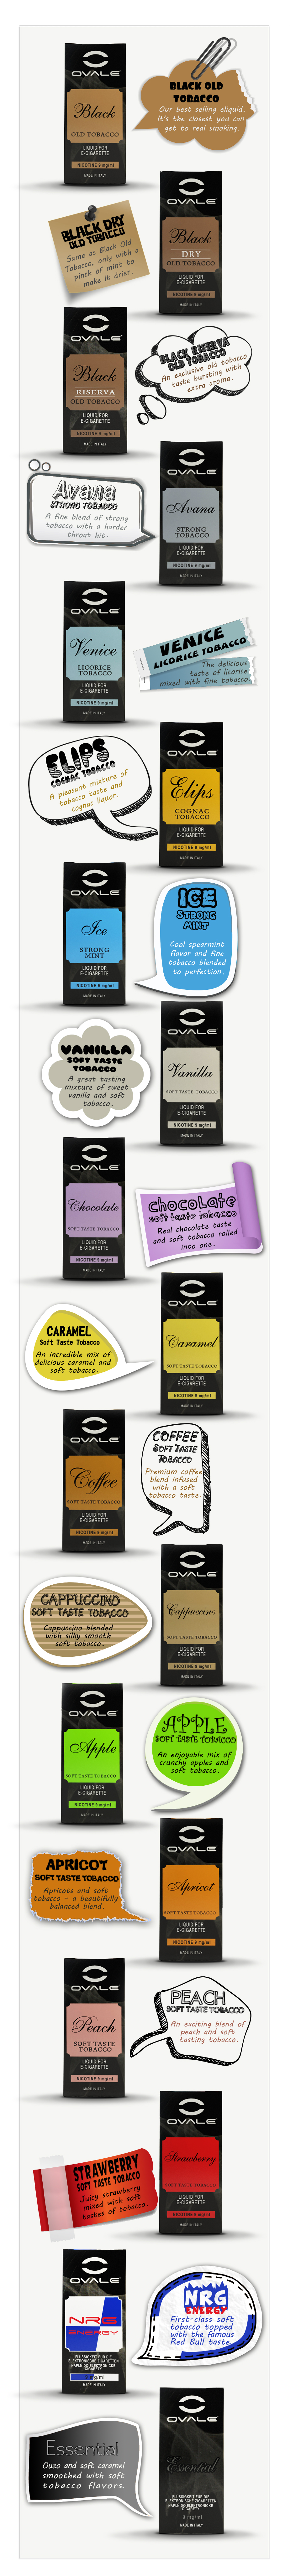 ovale electronic cigarette eliquid, description of flavors